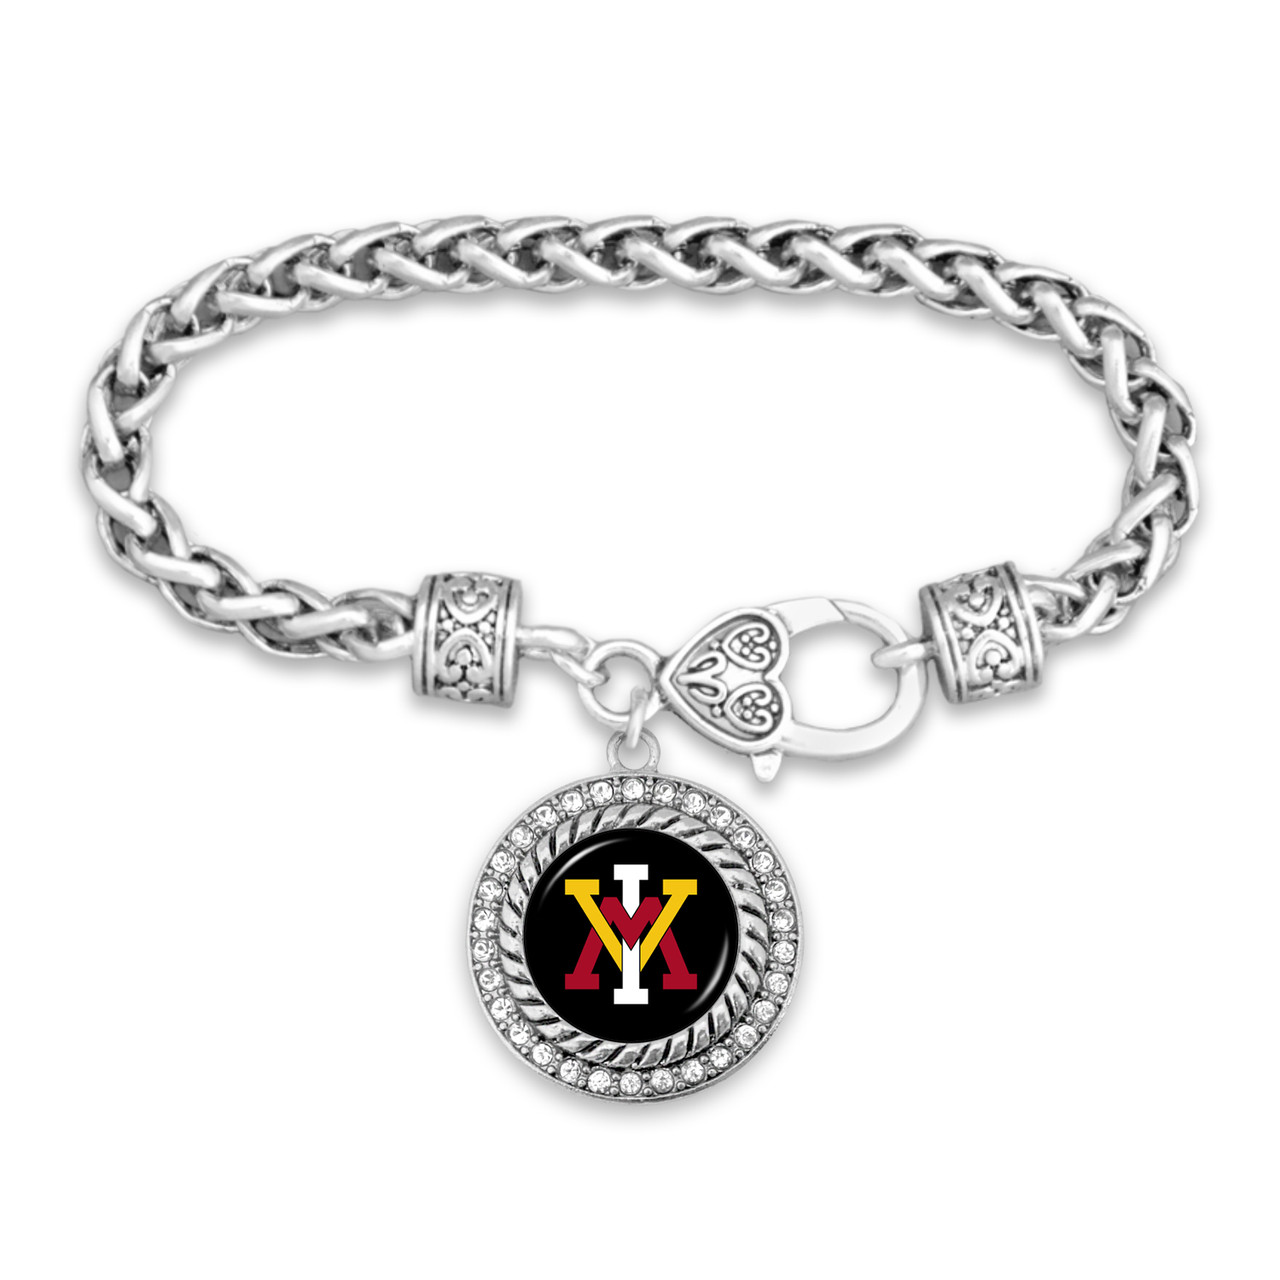 Virginia Military Keydets Bracelet- Allie